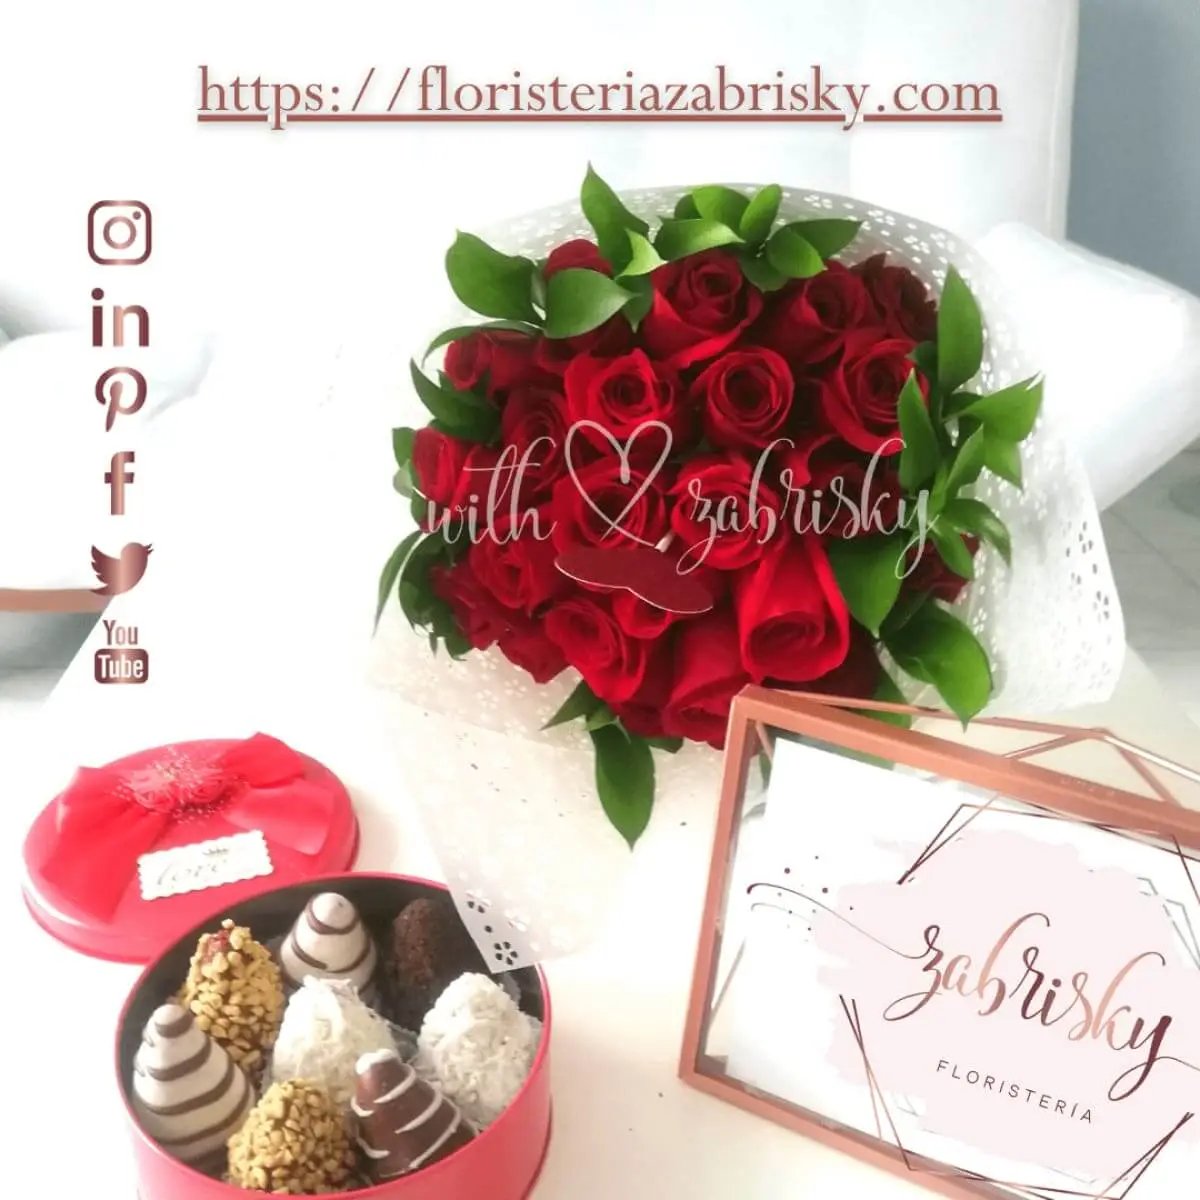 Rosas rojas y fresas con chocolate - Floristería Zabrisky